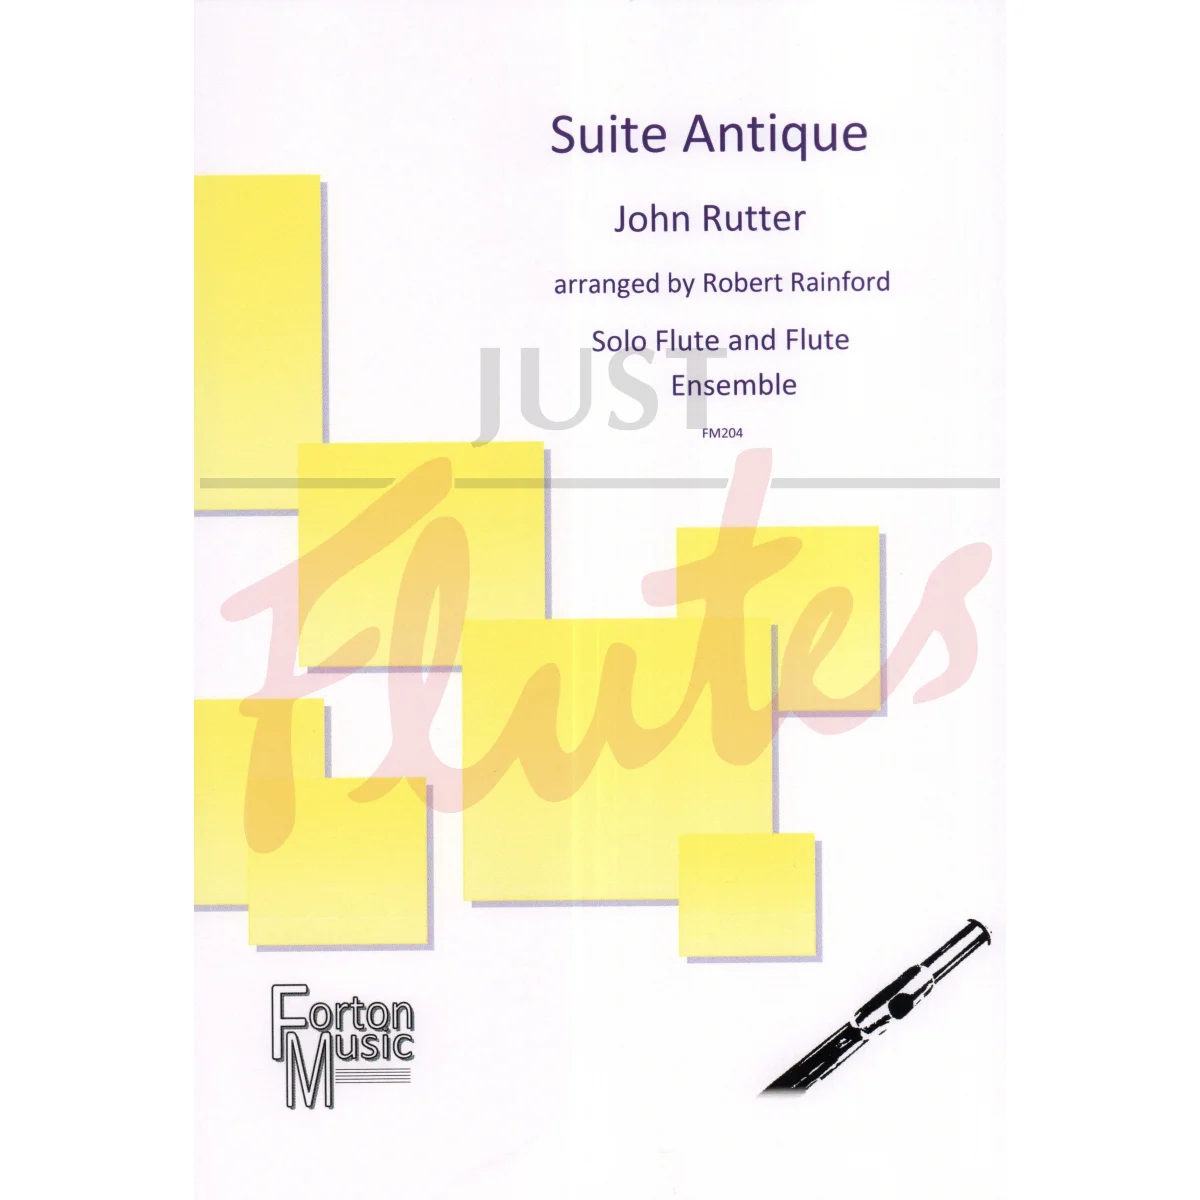 Suite Antique for Solo Flute with Flute Choir